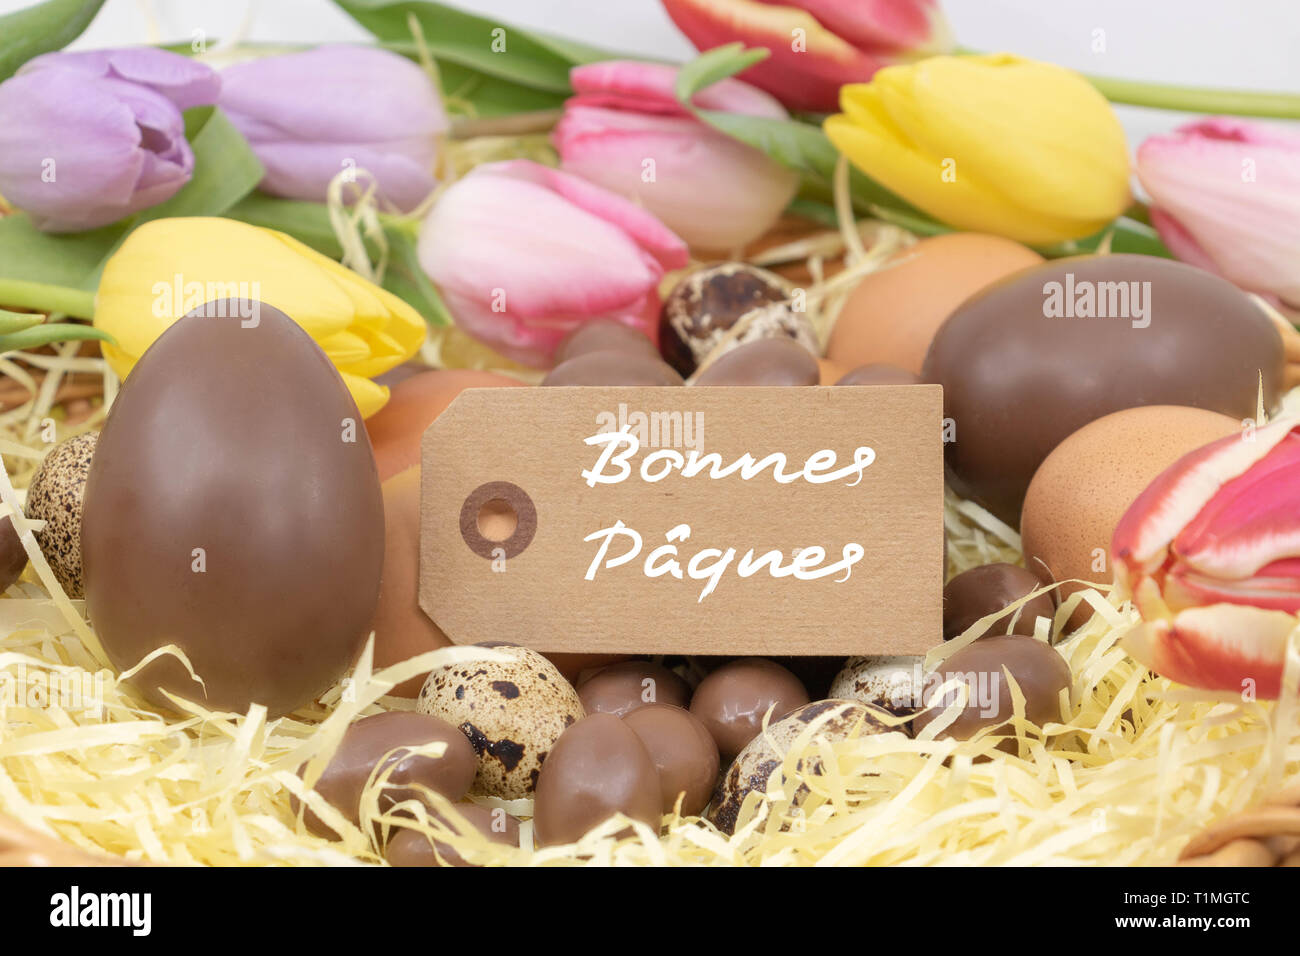 Joyeuses pâques (bonnes Pâques Joyeuses Pâques est écrit en français) sur une étiquette, célébration de Pâques avec des œufs en chocolat et de tulipes pastel Banque D'Images